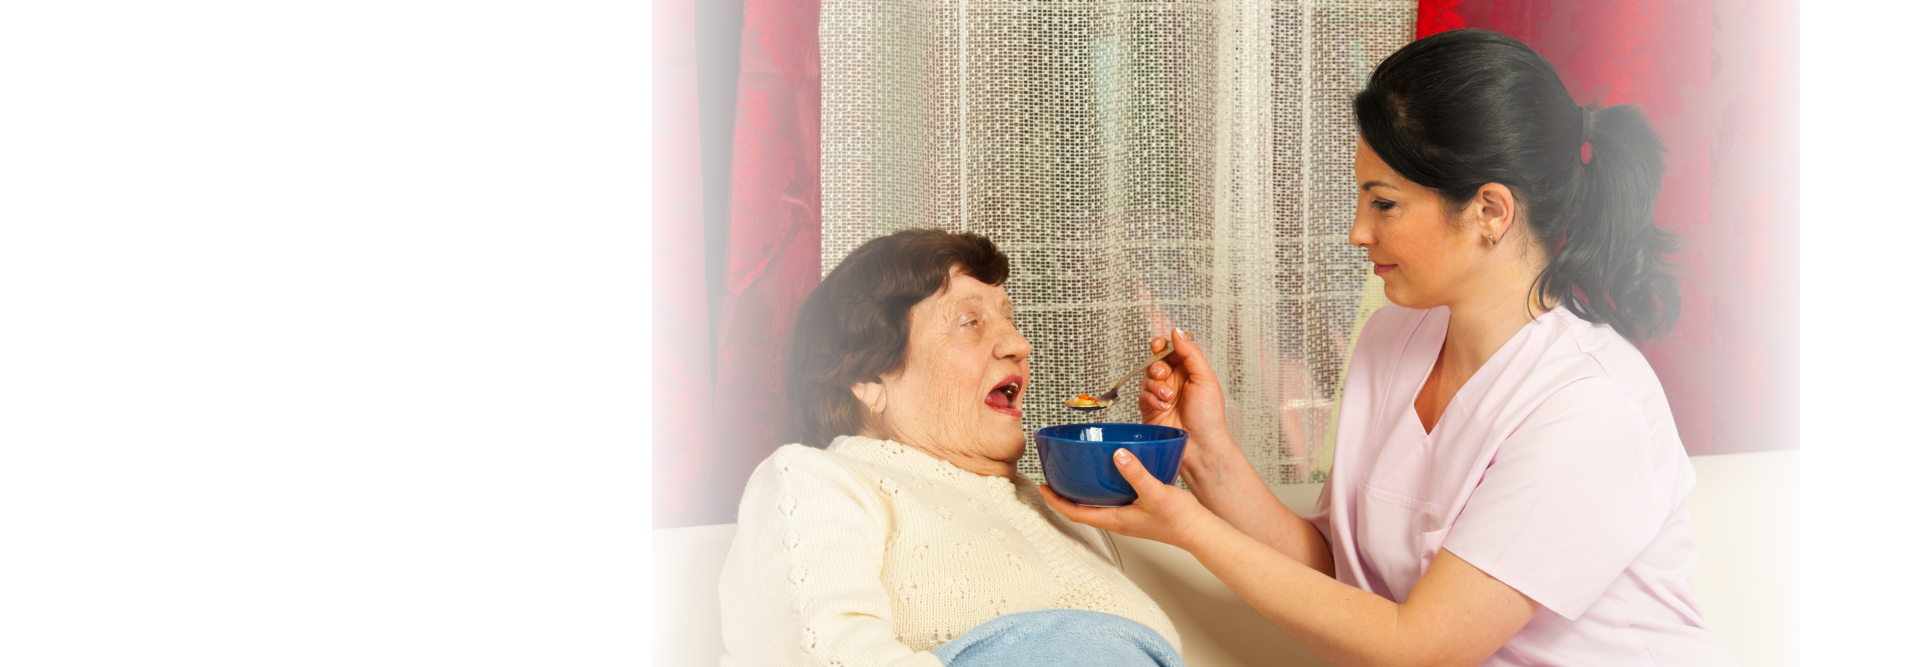 caregiver feeding elderly woman